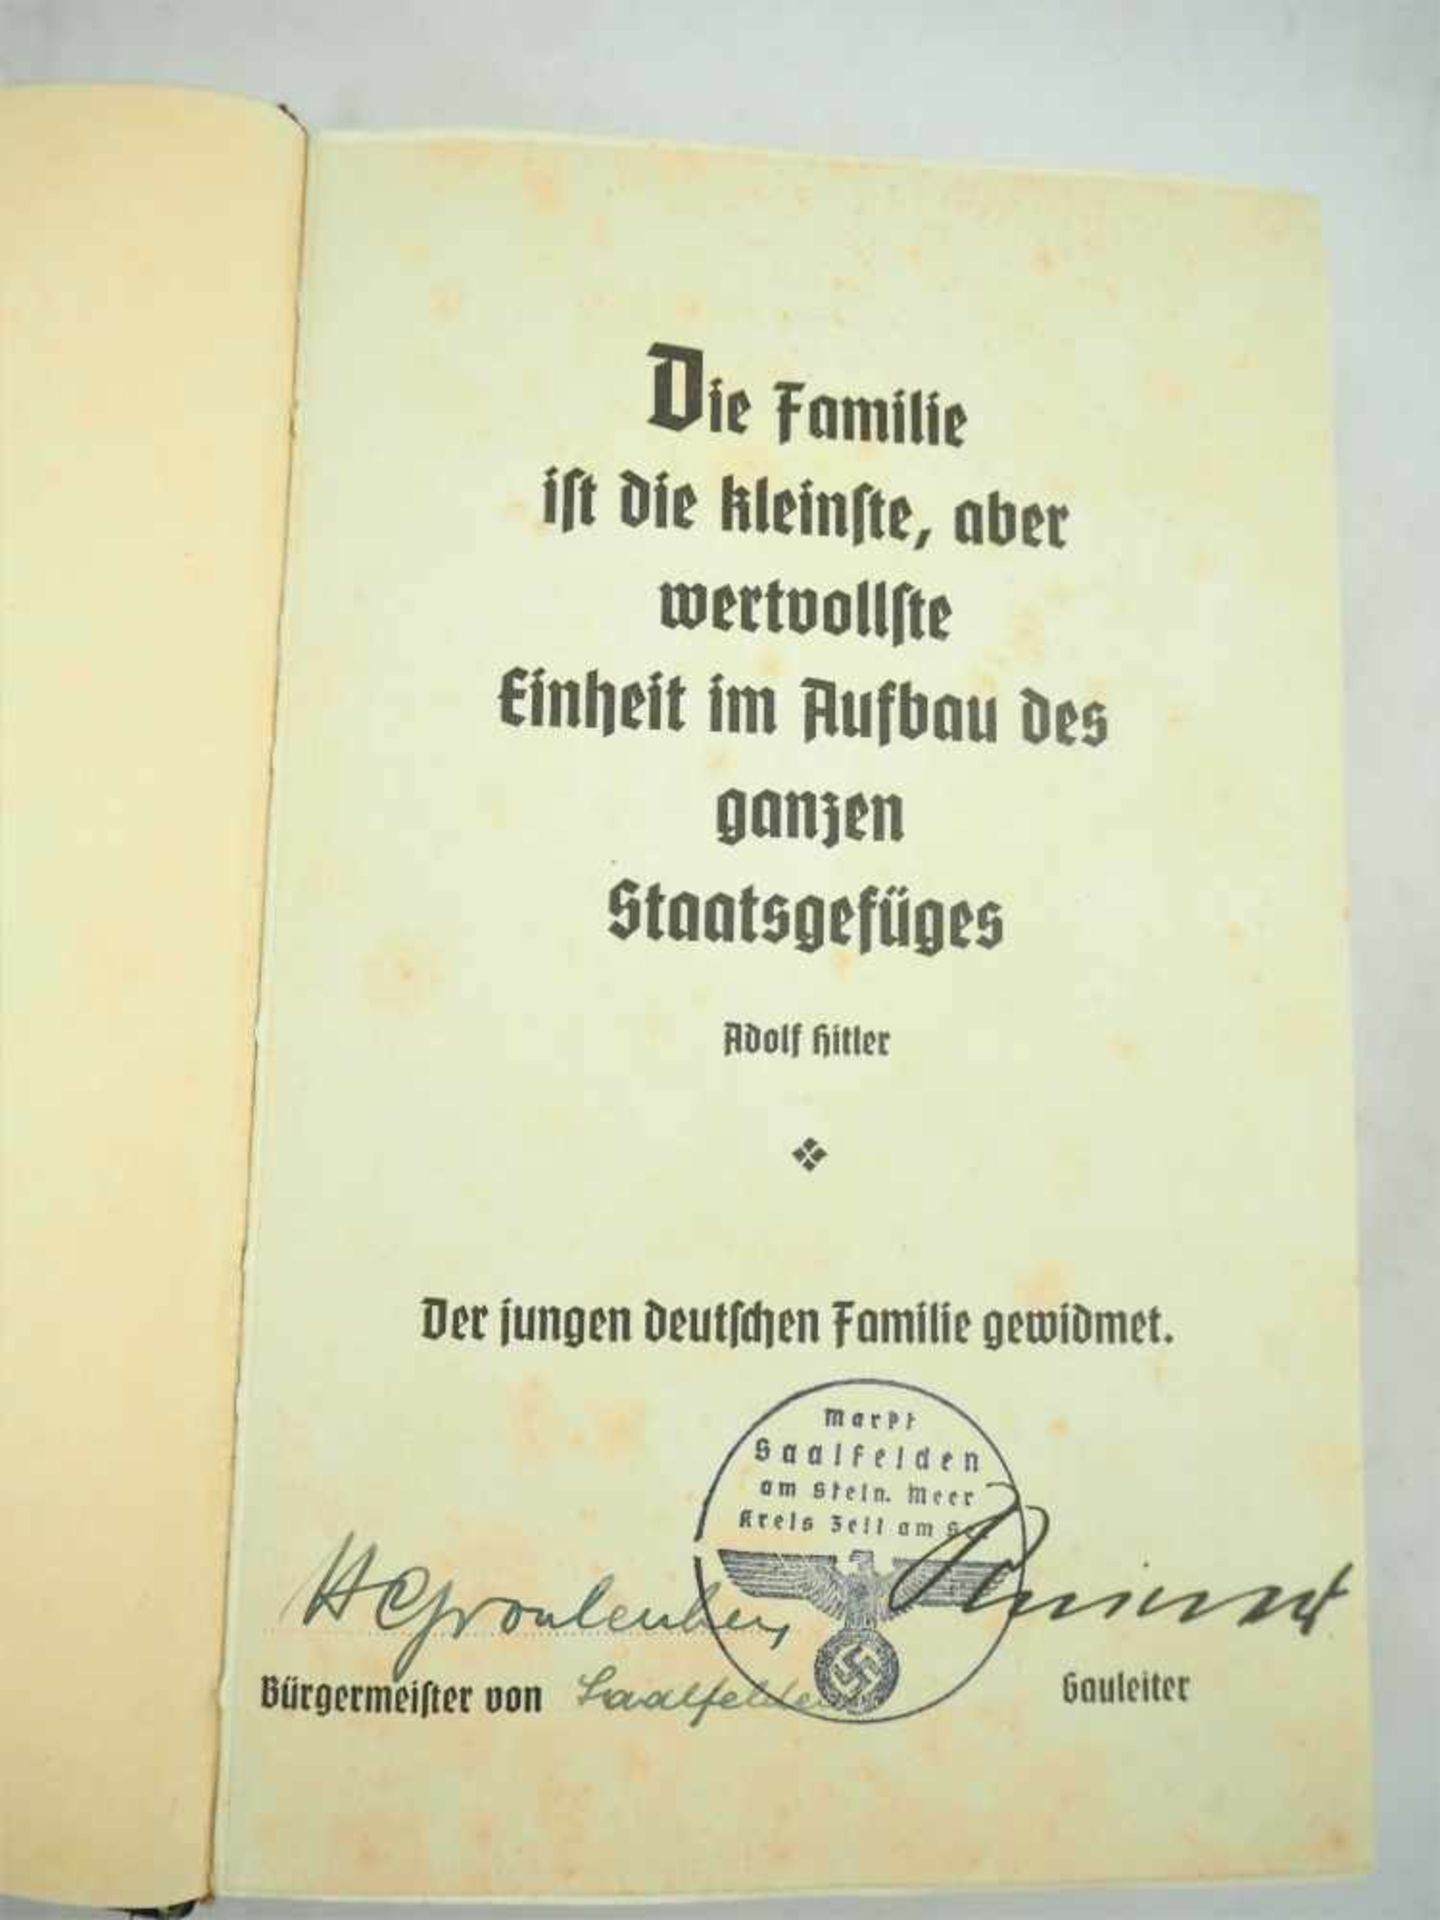 MEIN KAMPF, von Adolf Hitler, "Der Jungen deutschen Familie gewidmet", 1939781 S., Portraitbild, - Bild 2 aus 4